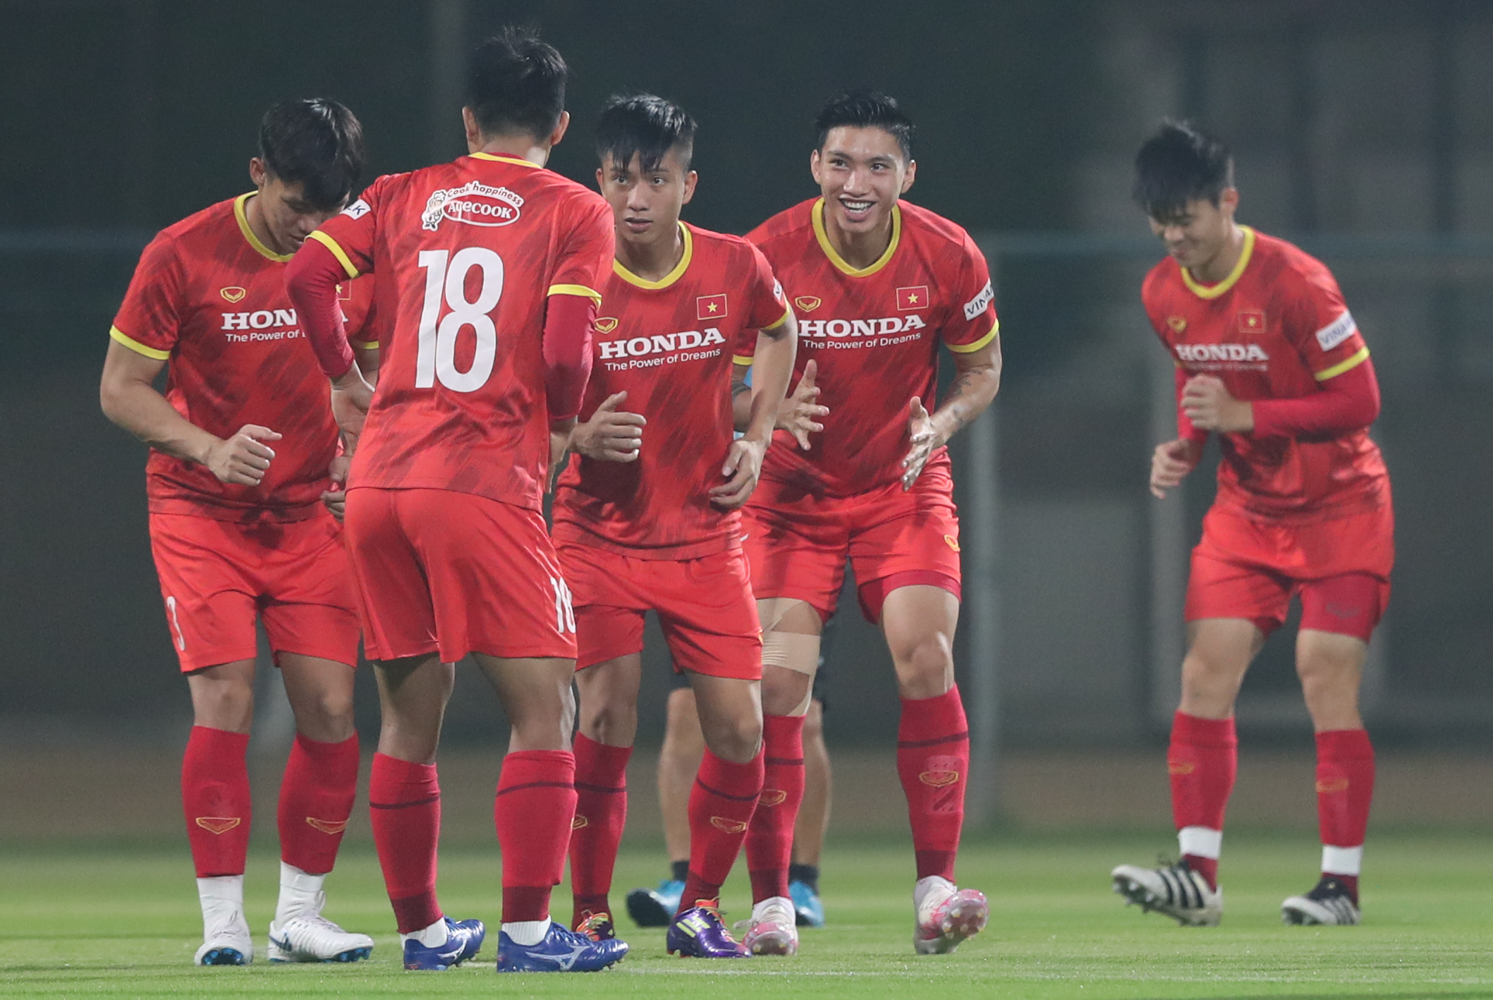 Việt Nam vs Indonesia, lịch thi đấu vòng loại World Cup 2022, trực tiếp bóng đá hôm nay, vtv6, bảng xếp hạng bảng G vòng loại World Cup 2022 khu vực châu Á, vn vs indo